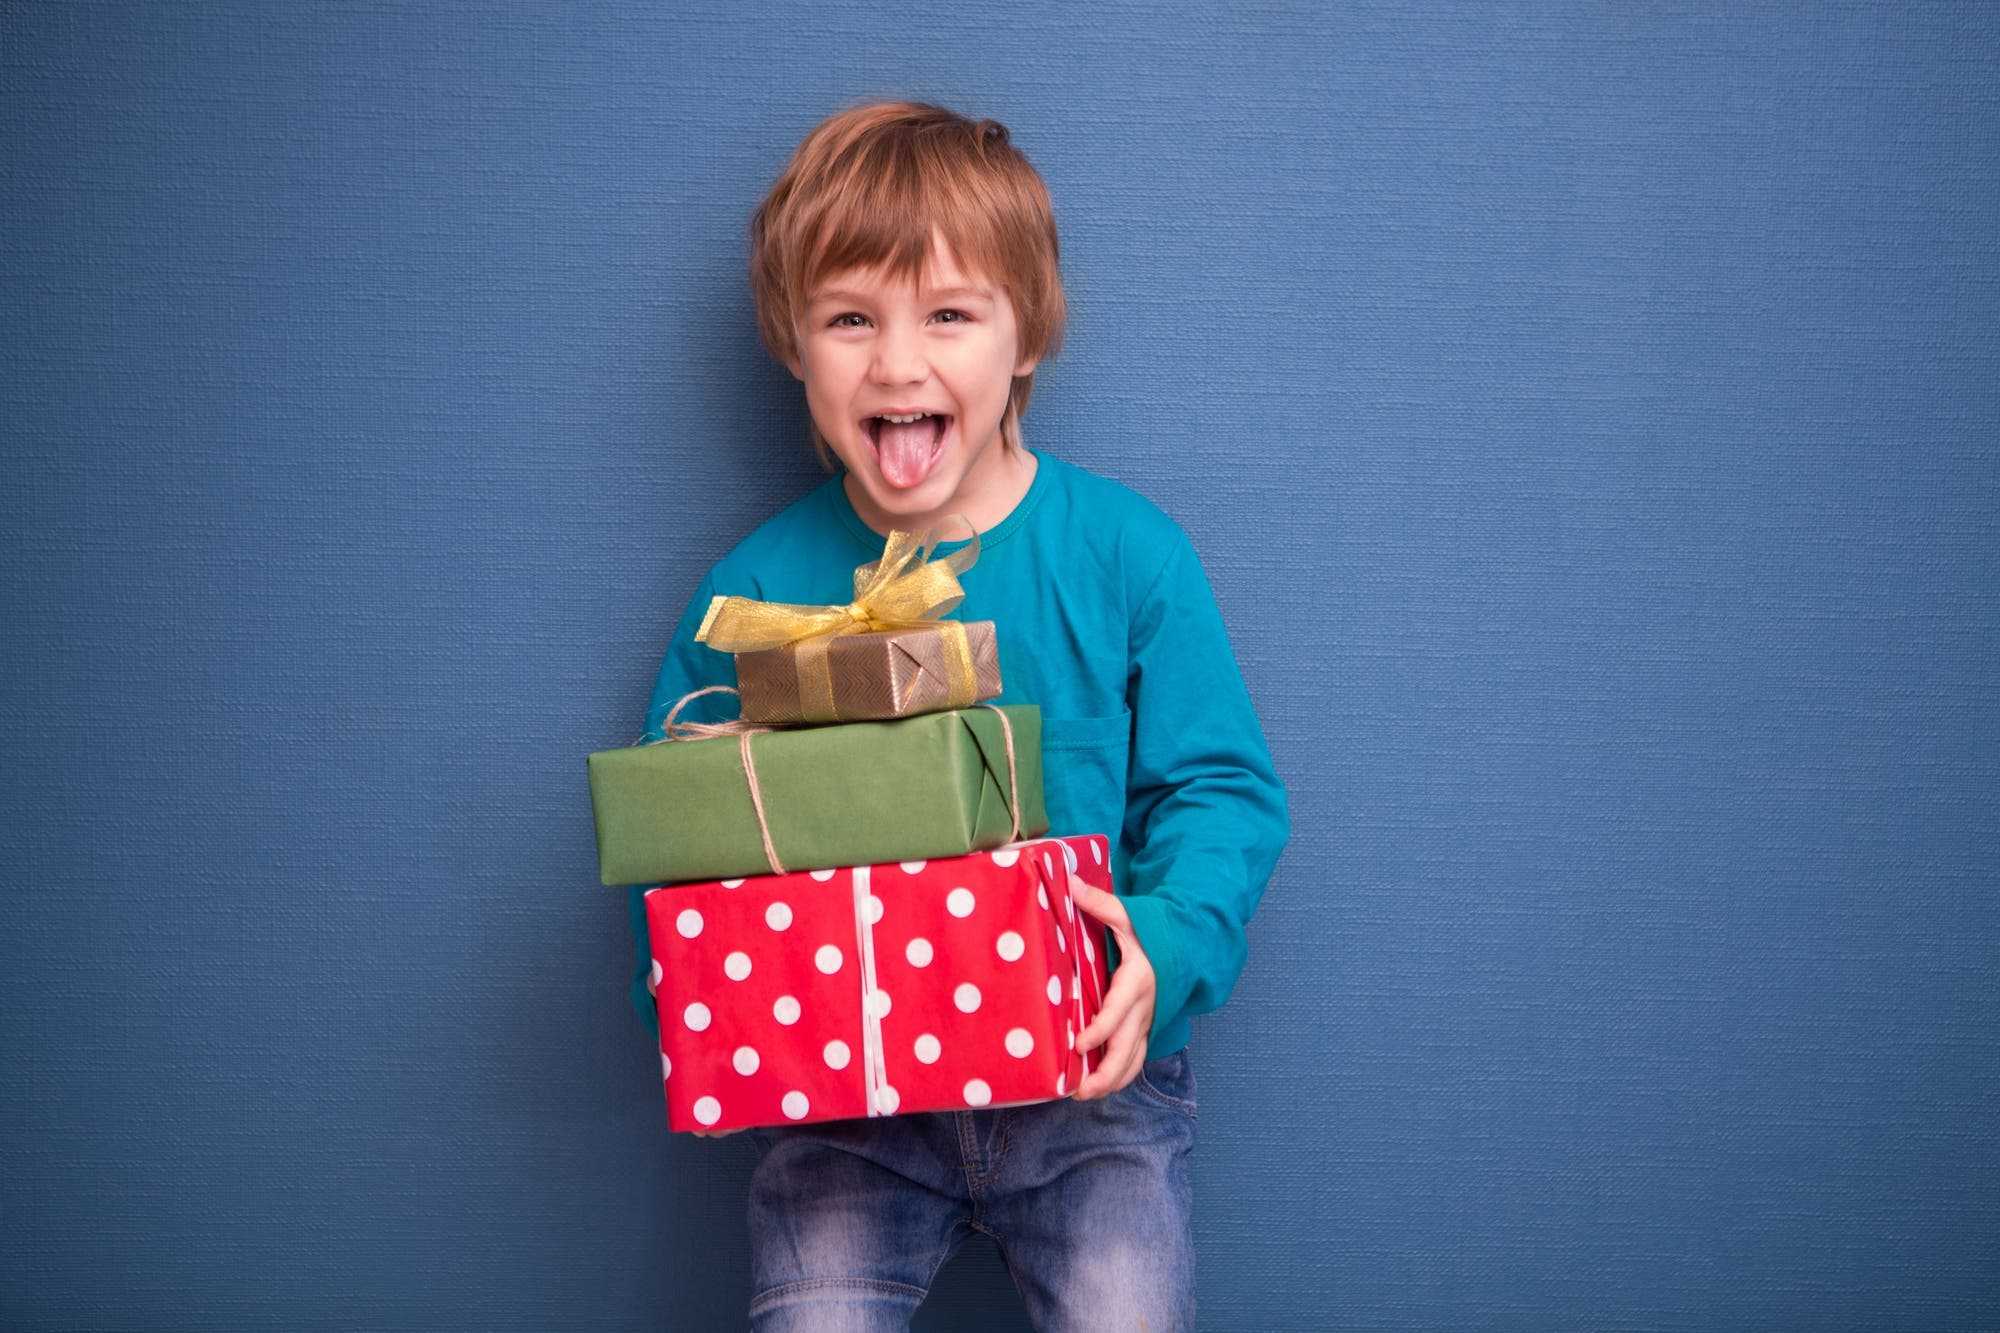 Что подарить девочке на 2 года на день рождения - идеи подарков, в том числе сделанных своими руками